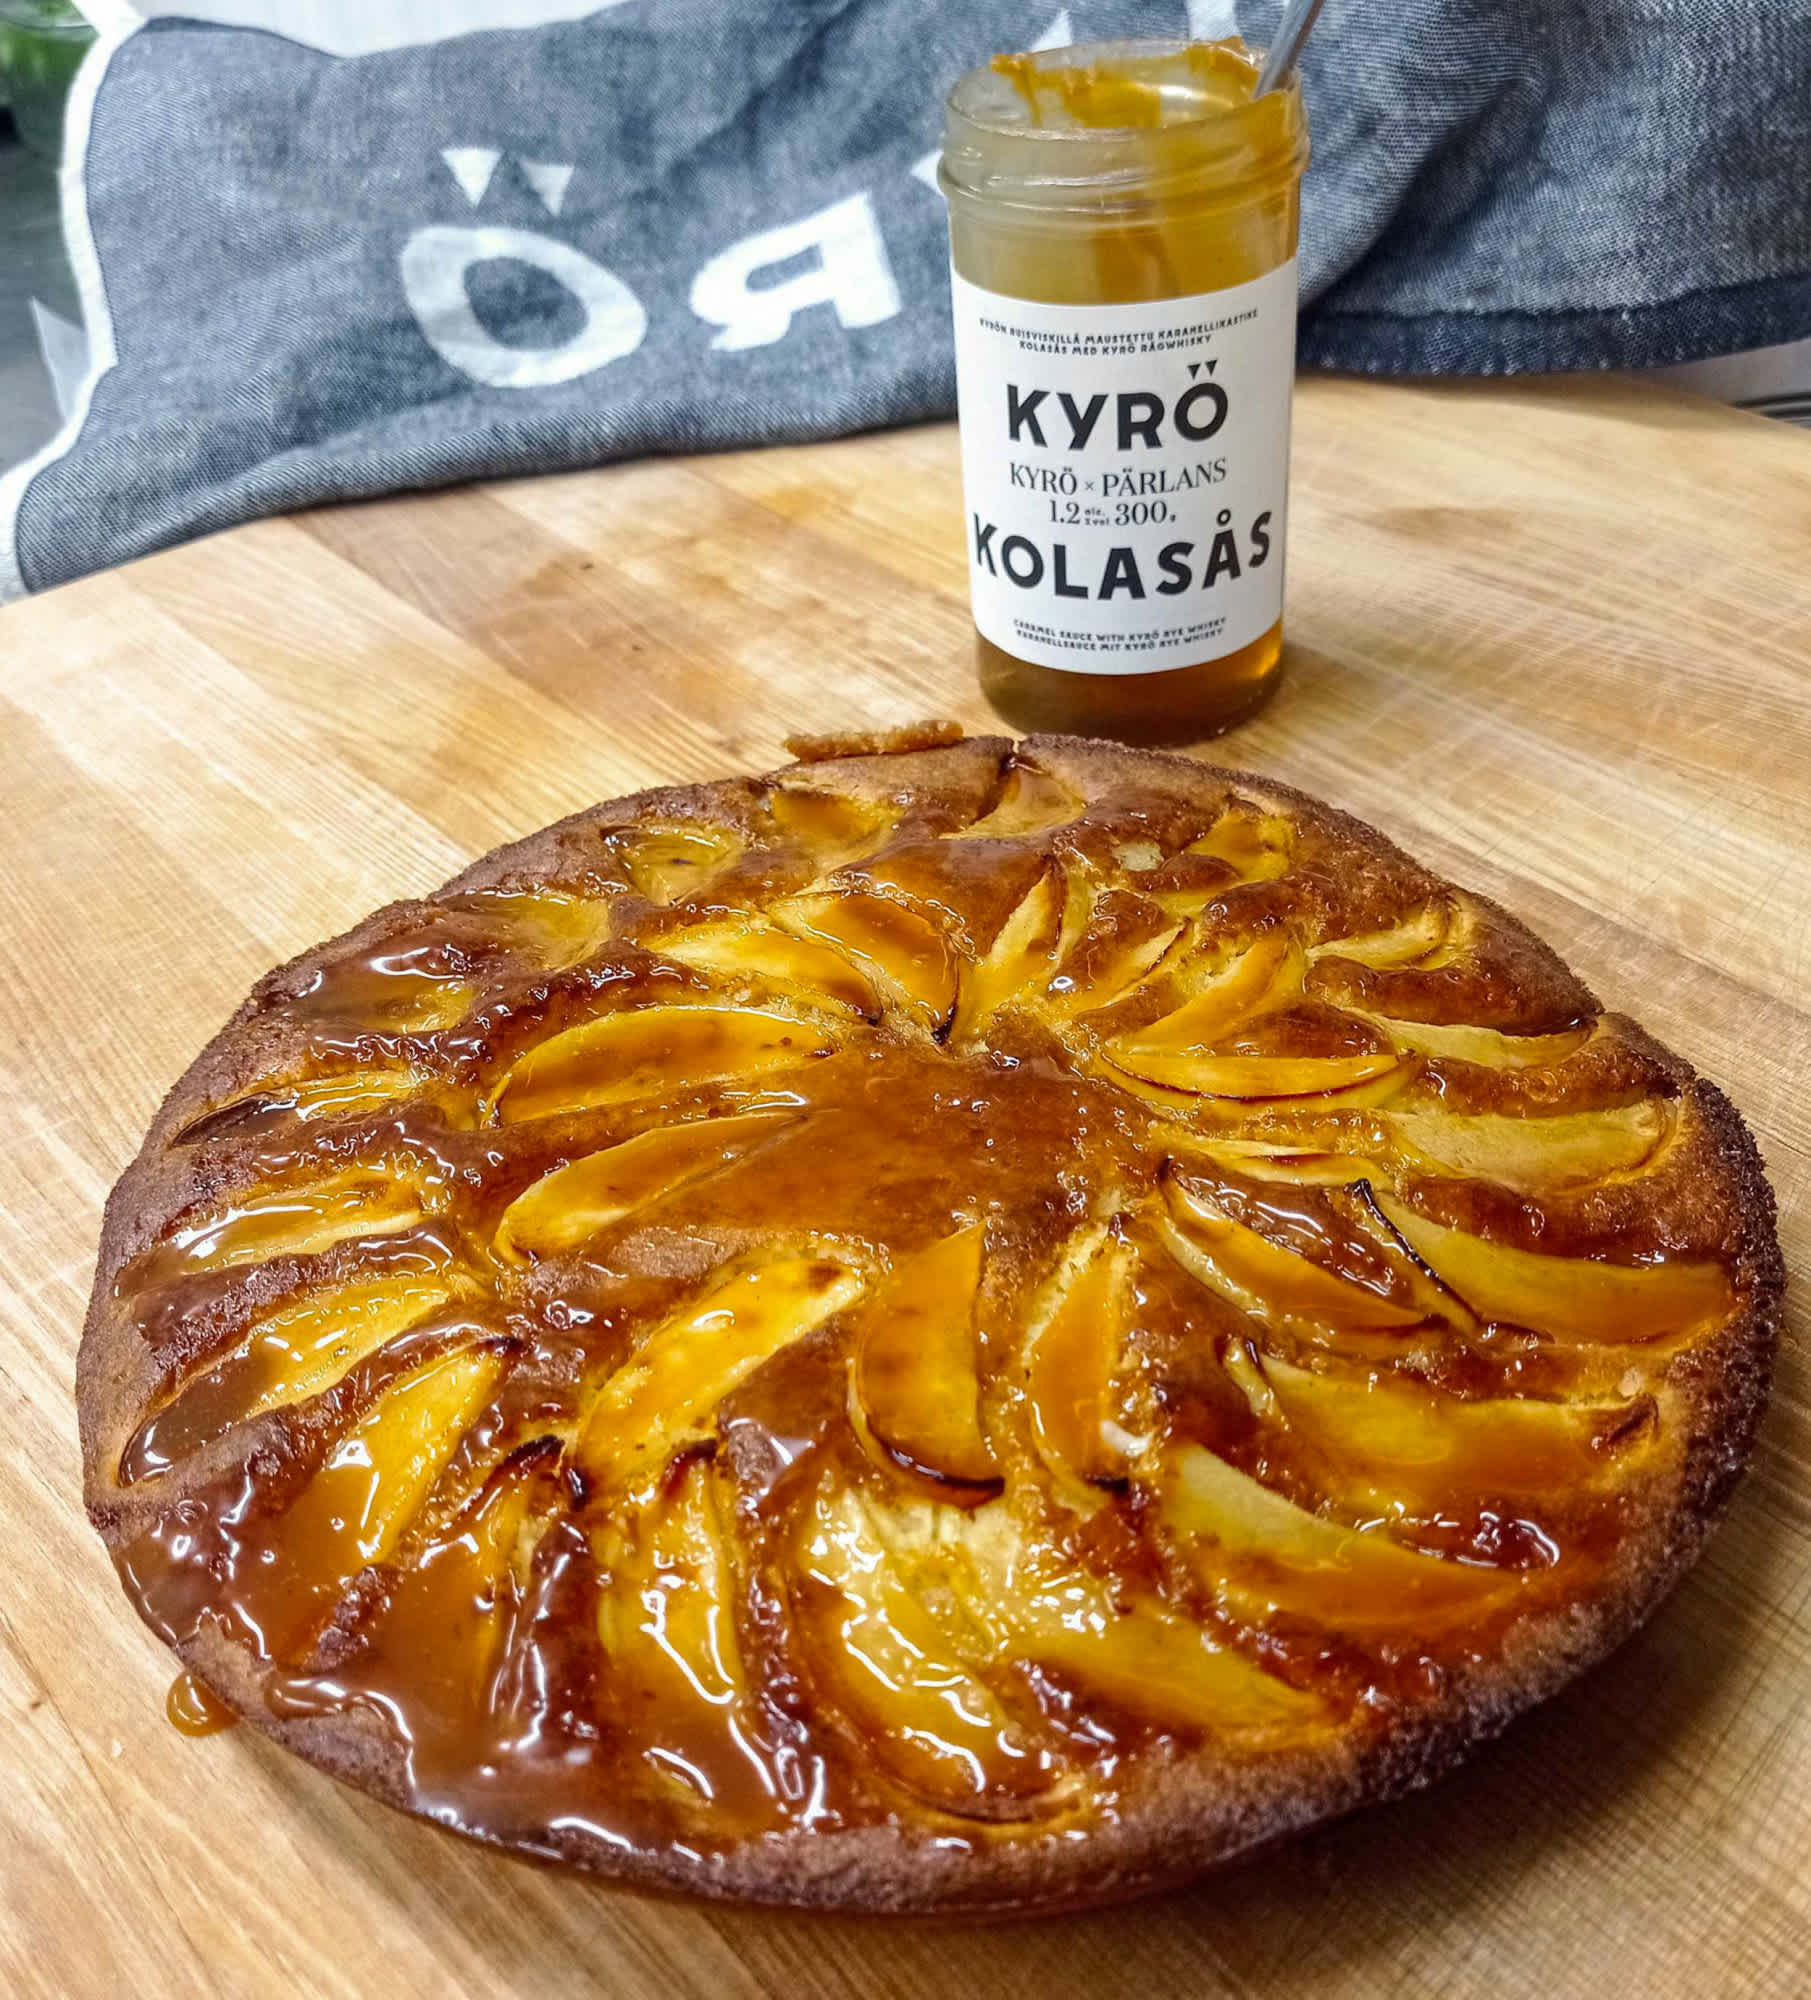 Home made apple pie with Kyrö x Pärlans caramel sauce.